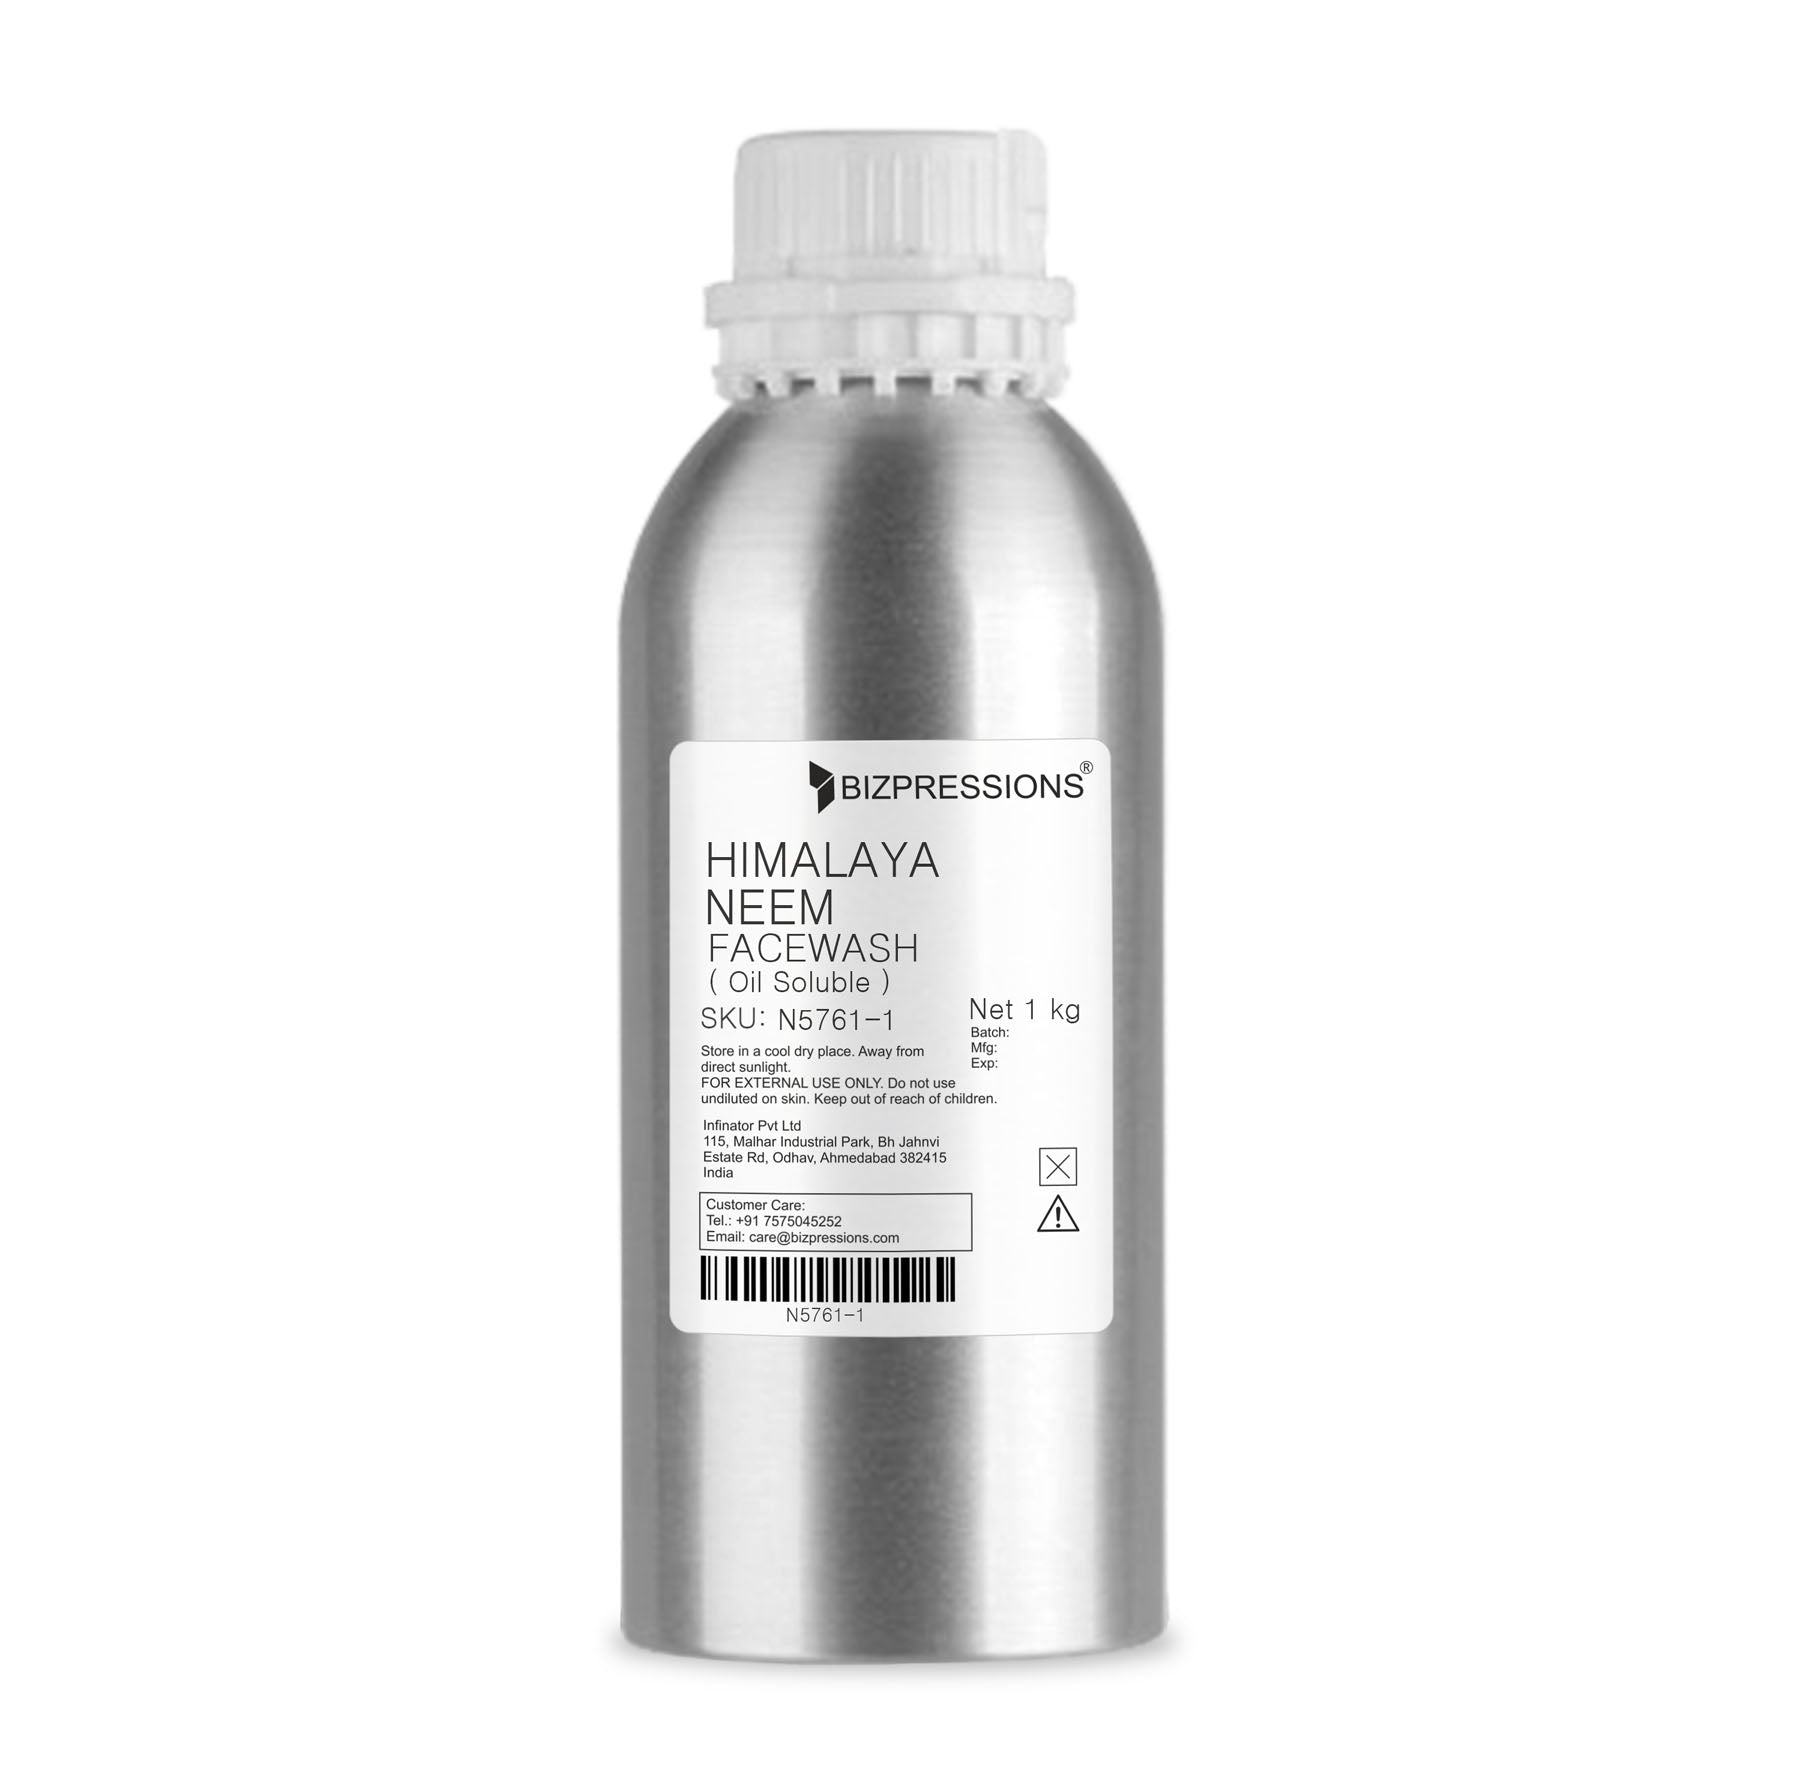 HIMALAYA NEEM FACEWASH - Fragrance ( Oil Soluble ) - 1 kg